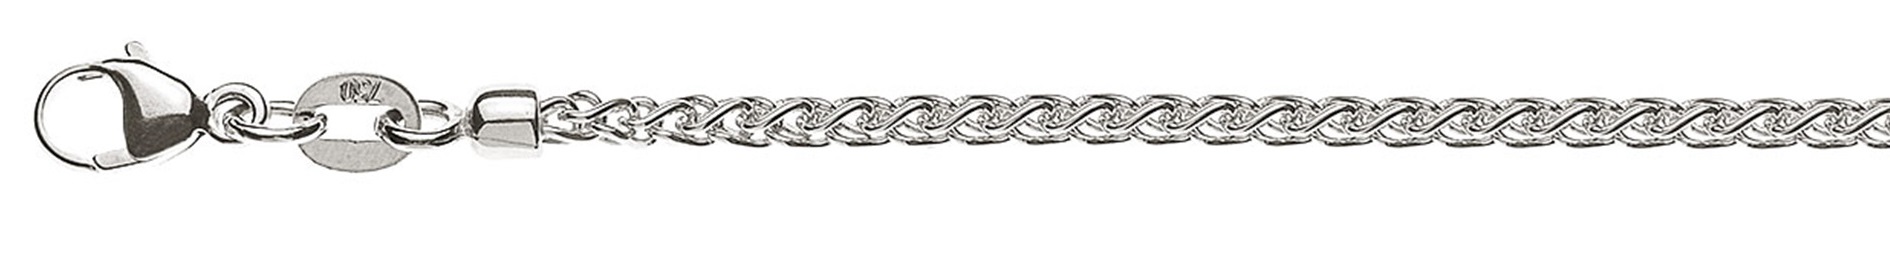 AURONOS Prestige Halskette Weissgold 18K Zopfkette 60cm 2.15mm